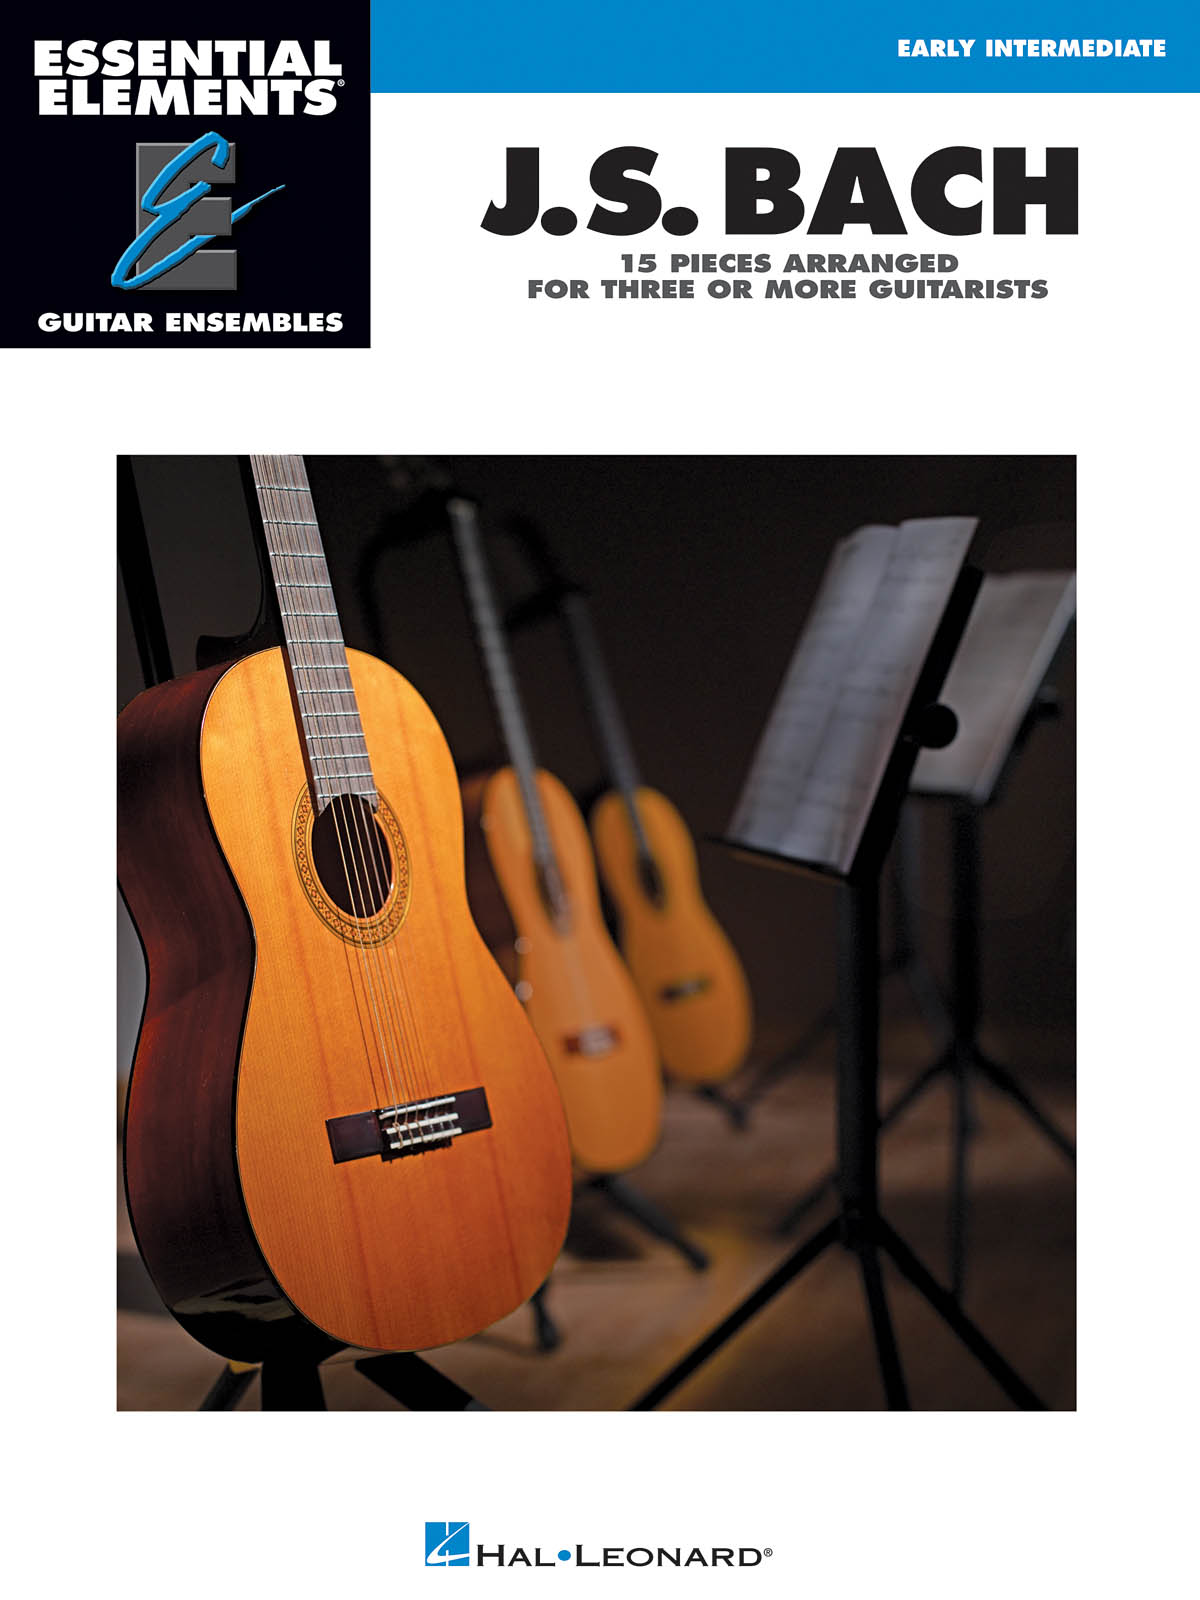 Johann Sebastian Bach: Essential Elements Guitar Ens - J.S. Bach: Guitar